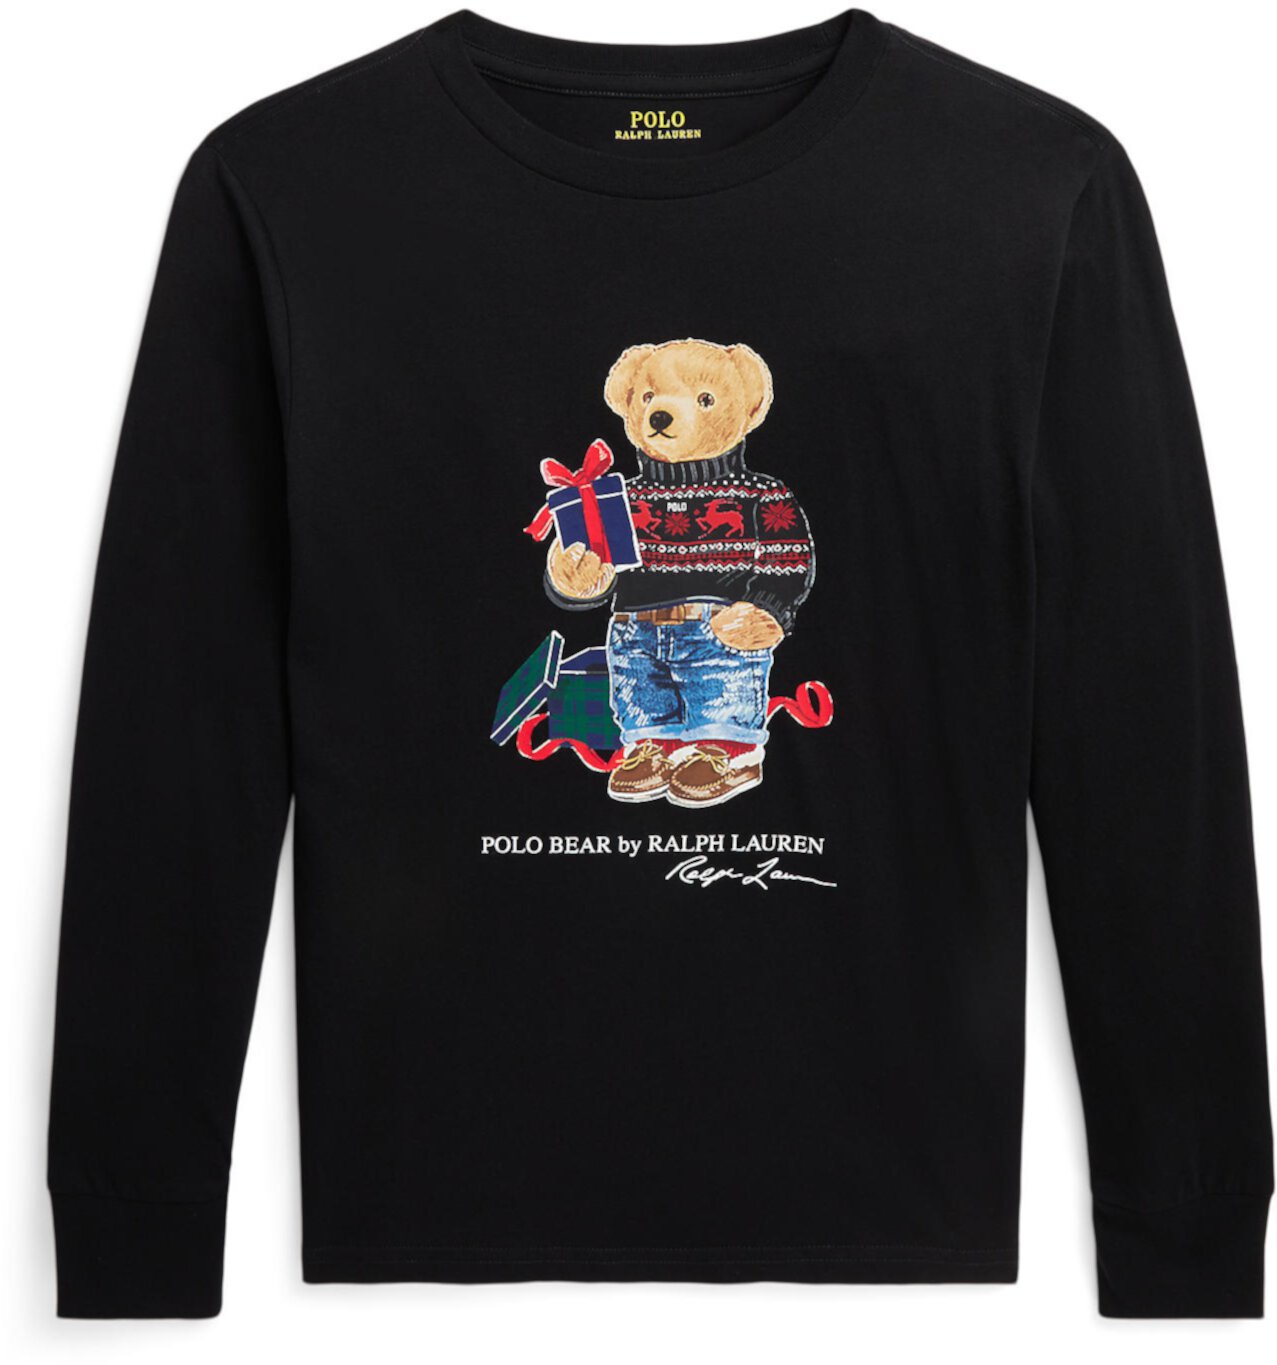 Хлопковая футболка с длинными рукавами Polo Bear (для больших детей) Polo Ralph Lauren